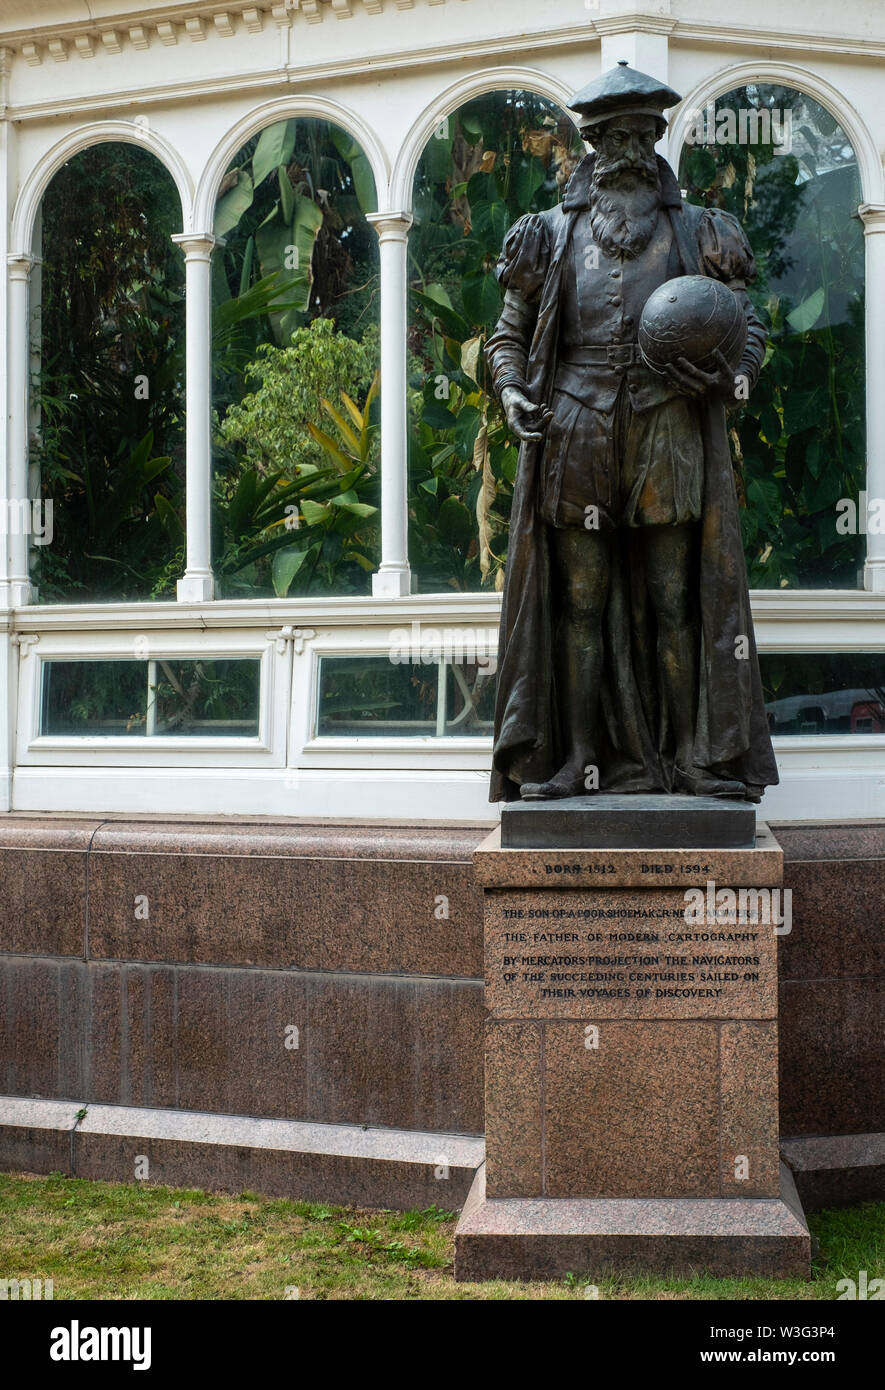 Statue de Gerardus Mercator, le père de la cartographie moderne et inventeur de la carte de projection, à l'extérieur de la Palm House à Sefton Park, Liverpool (Royaume-Uni Banque D'Images